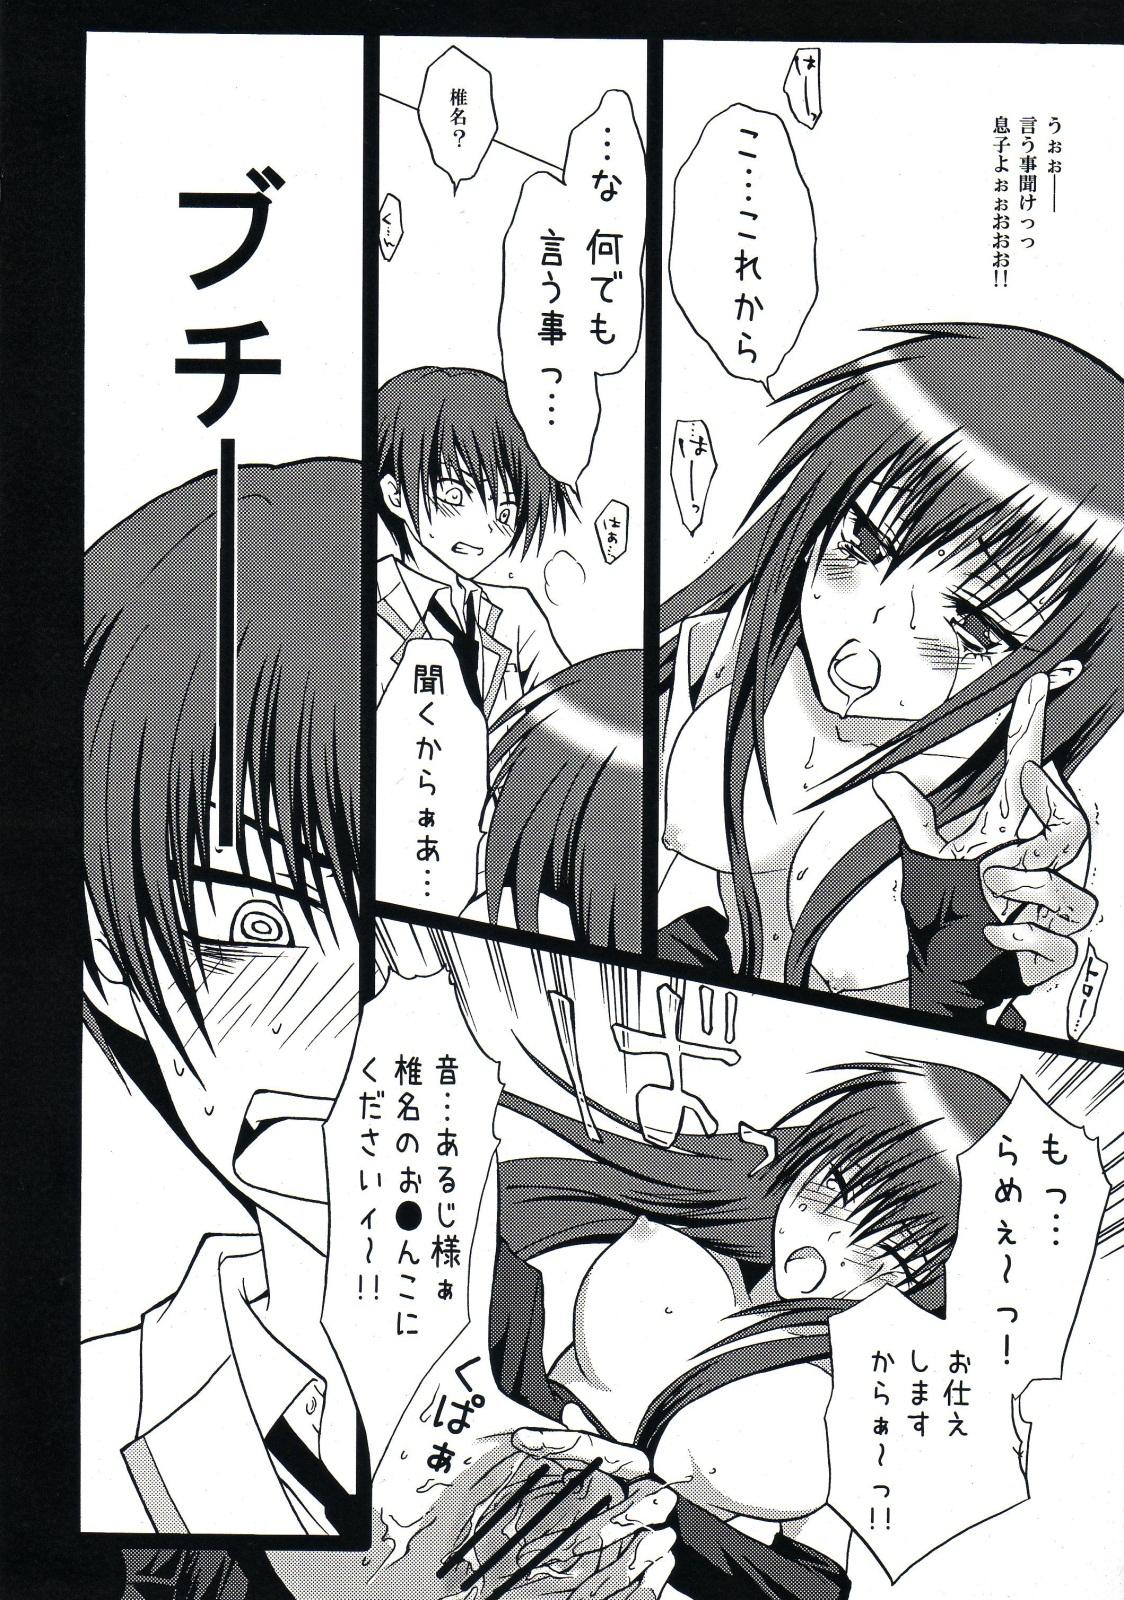 Spy Shiina ga Haika ni natta you desu - Angel beats Menage - Page 8